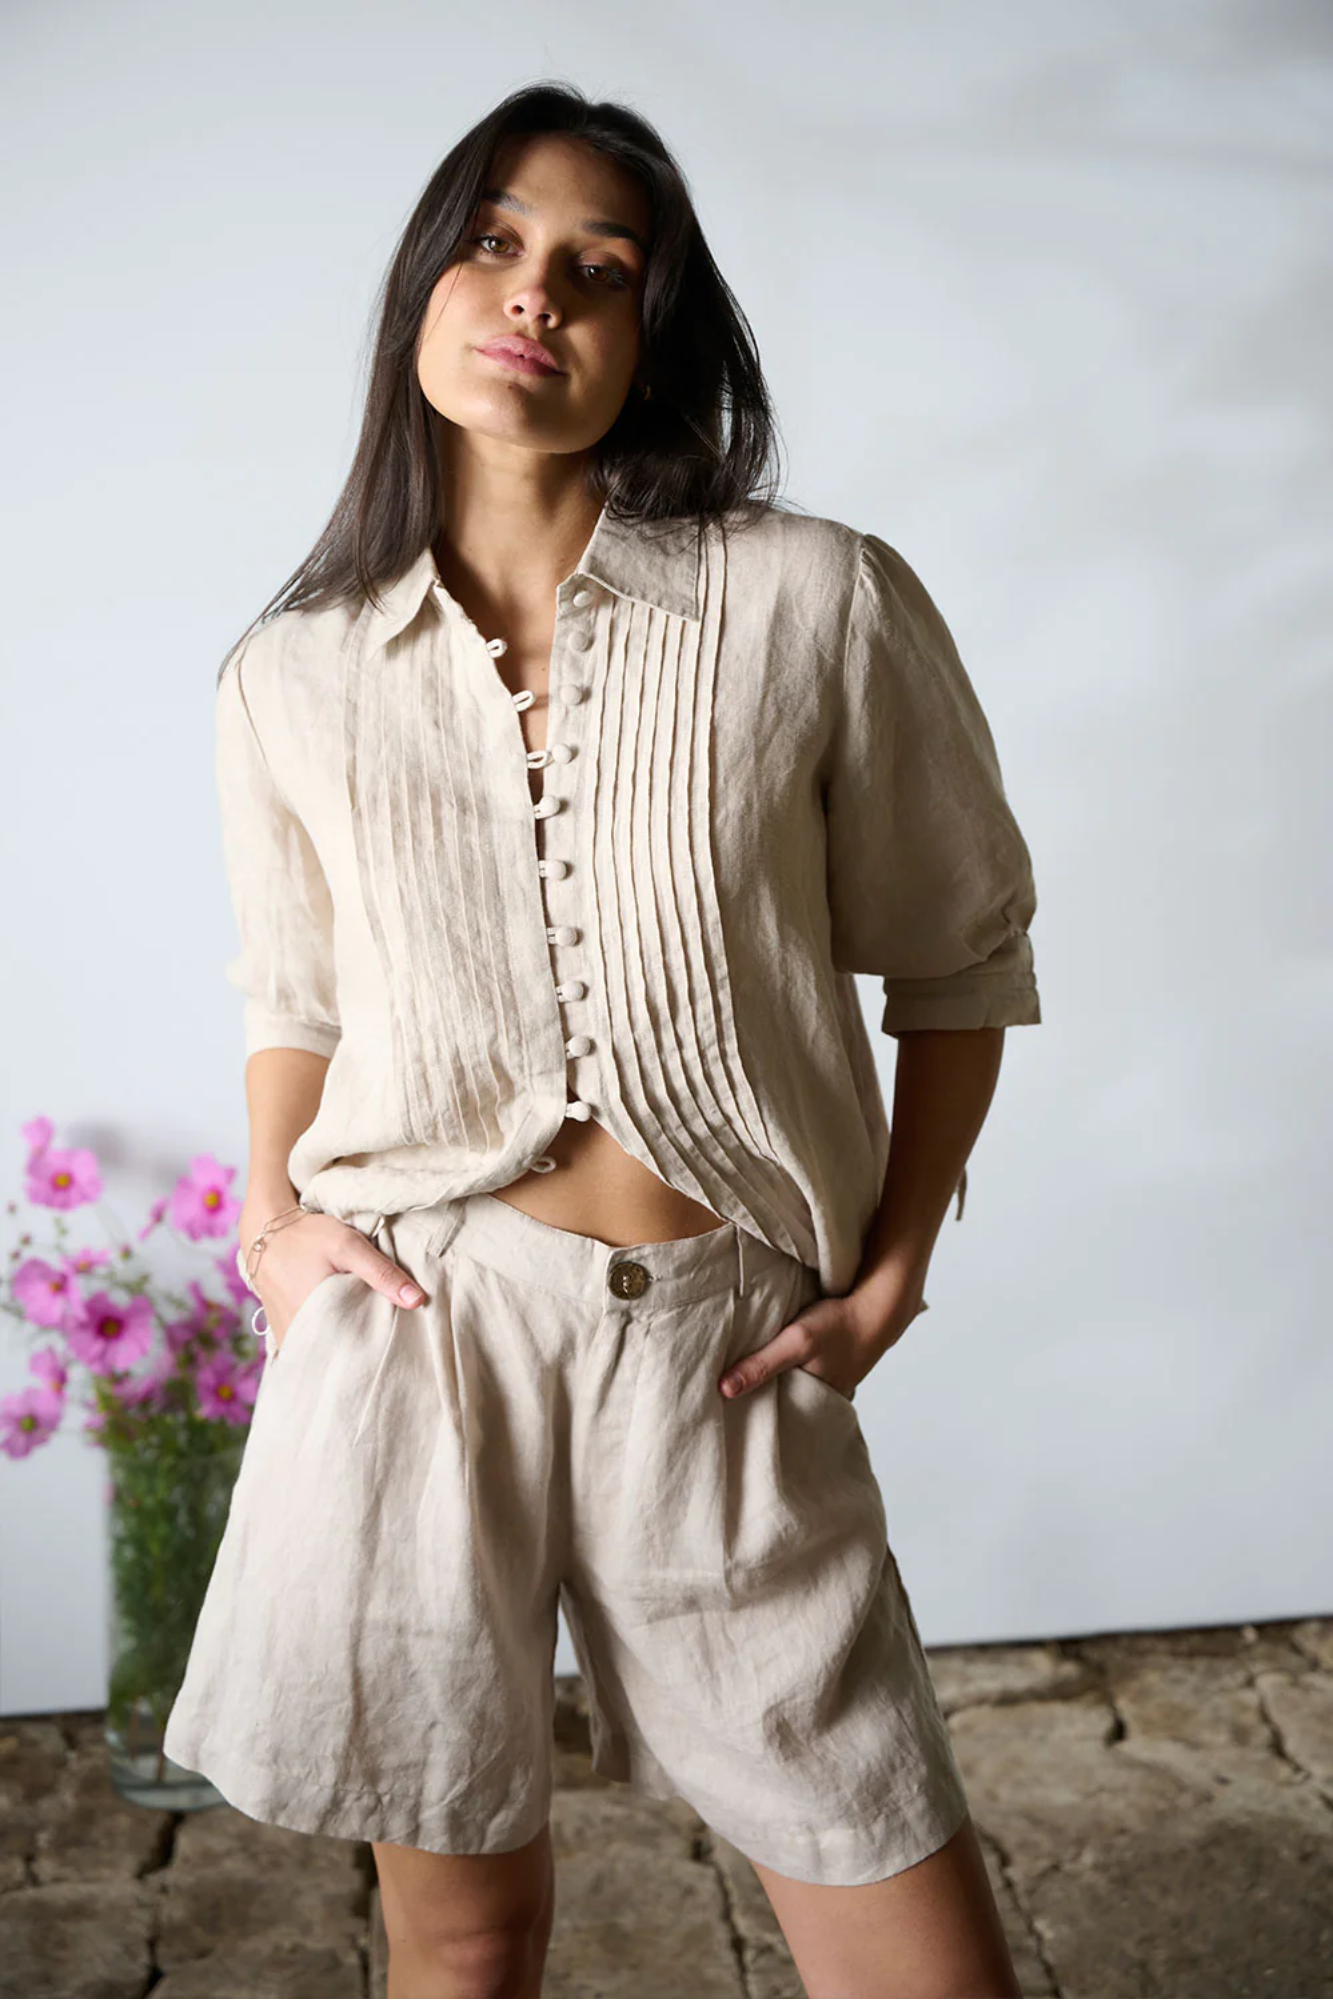 'Capri' Linen Shorts - White & Natural